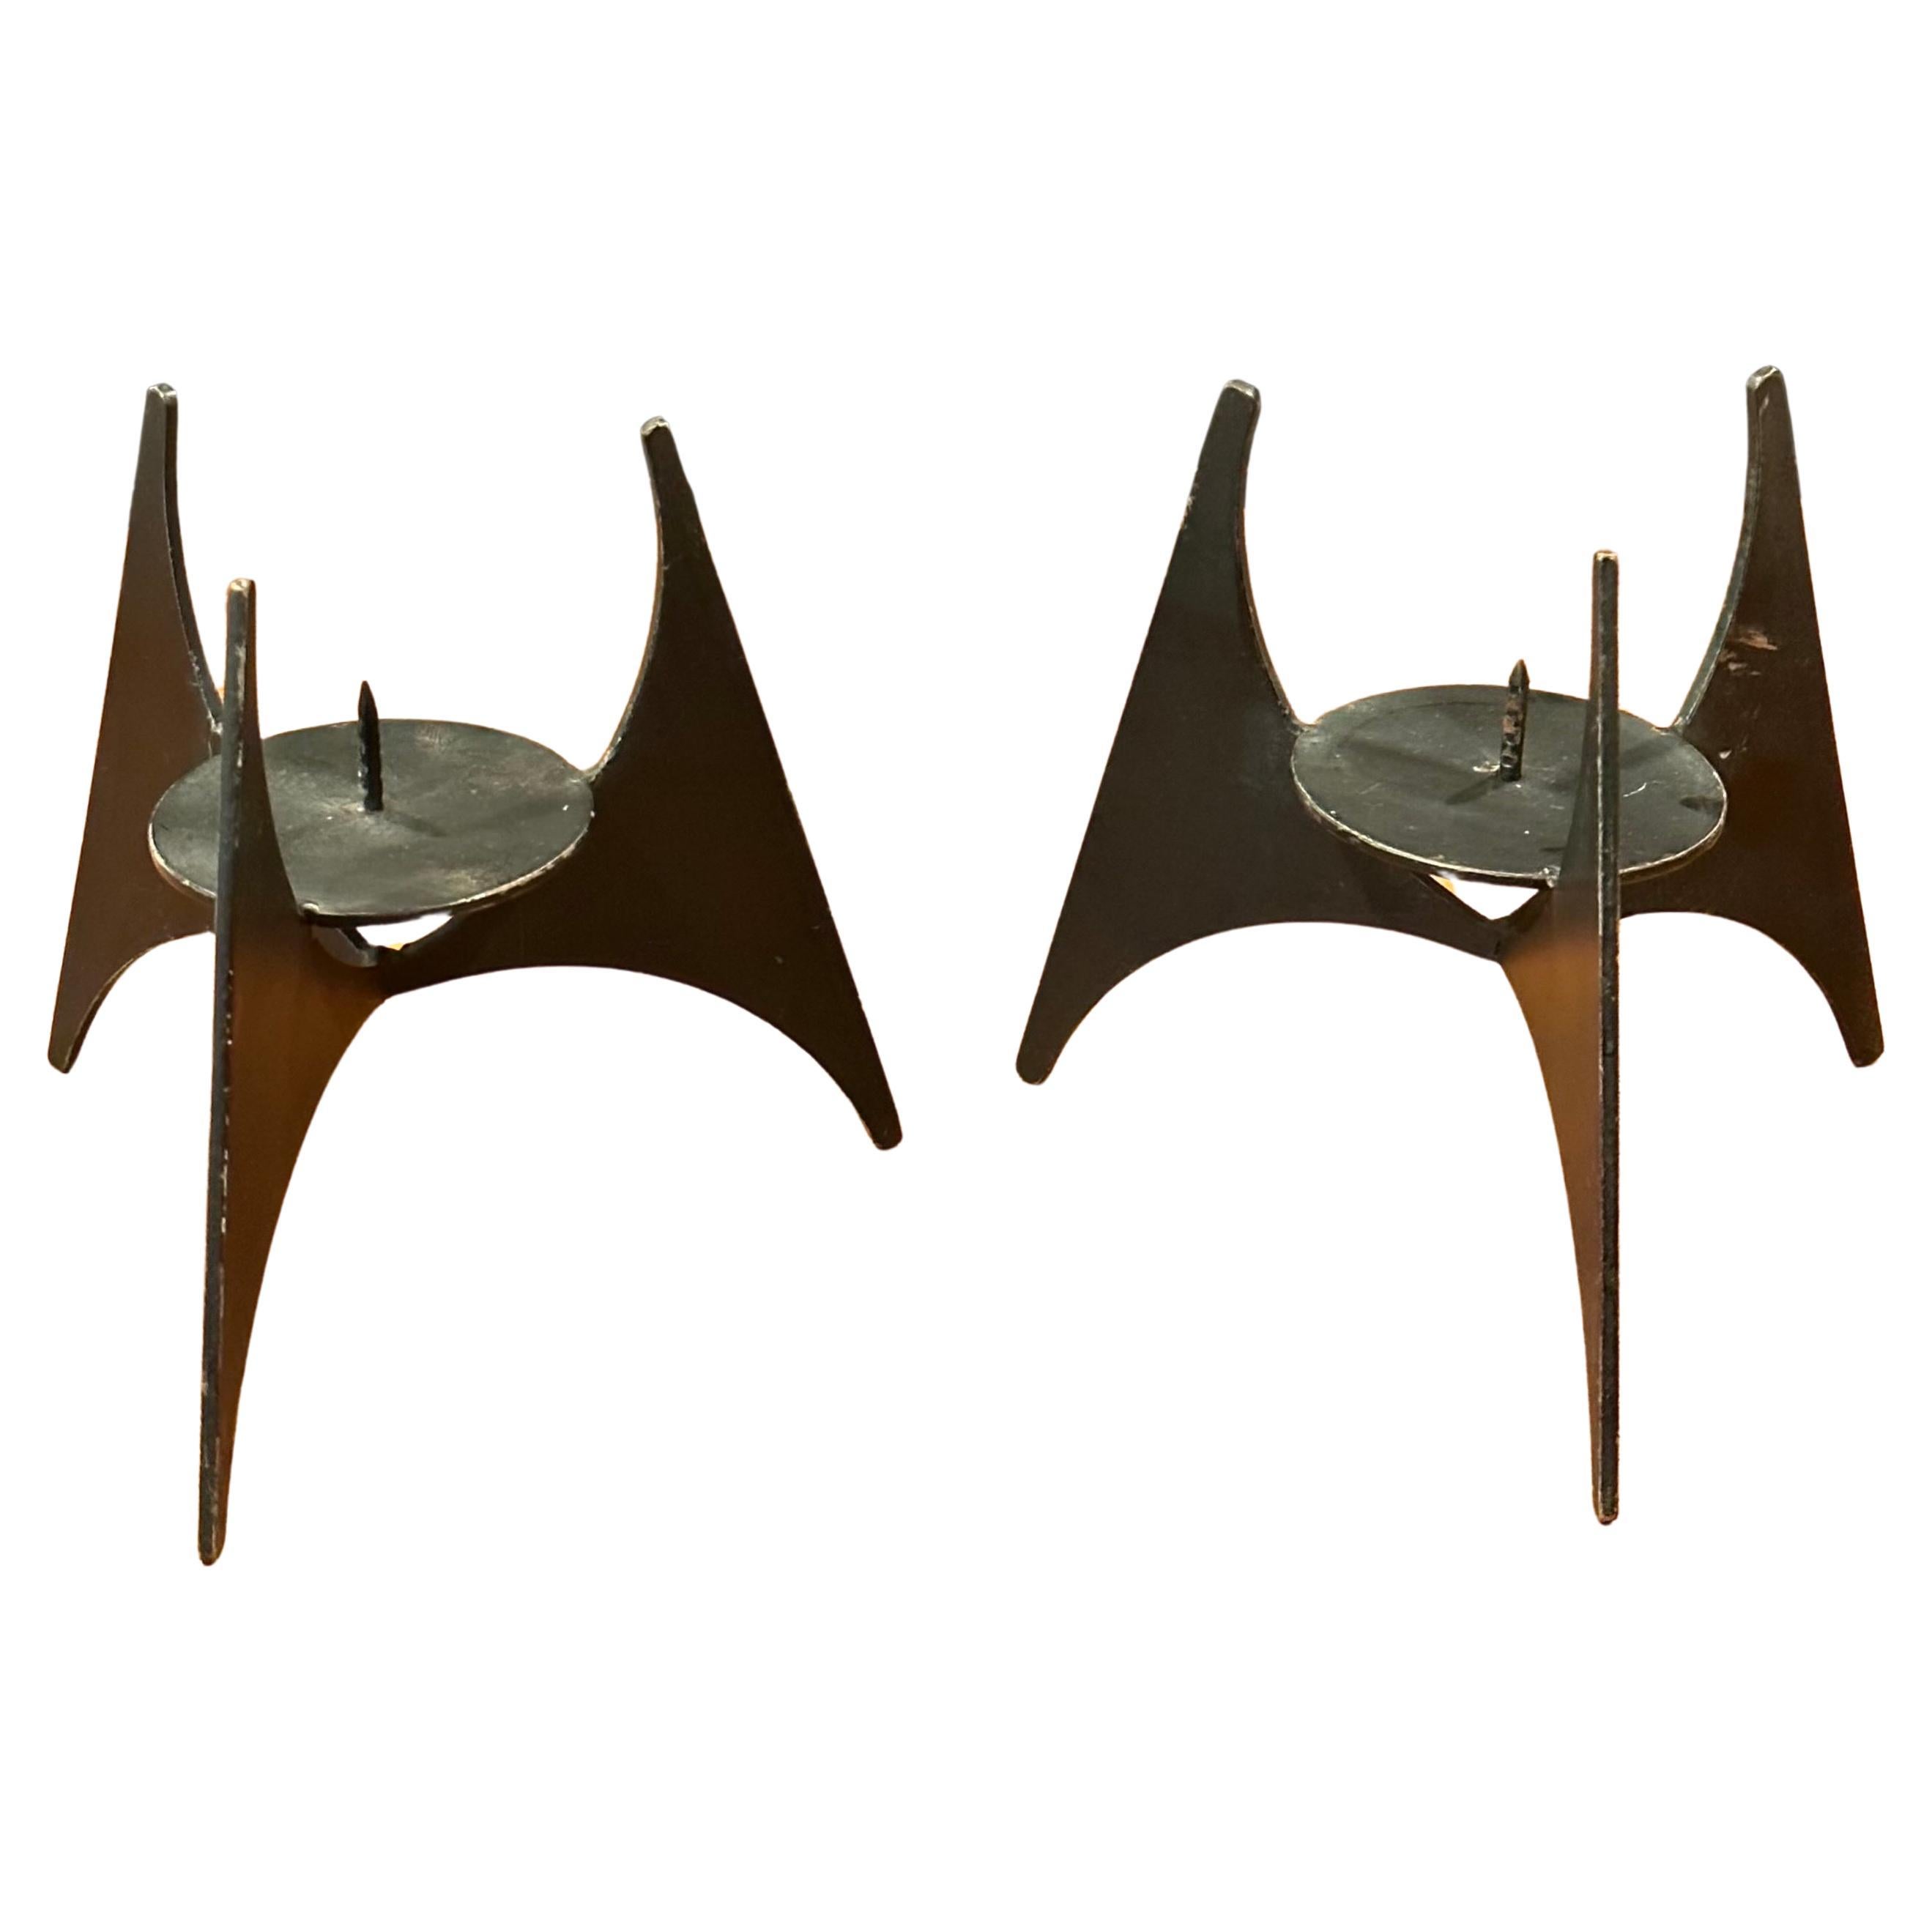 Ein schönes Paar modernistischer Kerzenhalter aus Stahl, circa 1970er Jahre.   Der Halter hat die Form einer dreieckigen Pyramide, die von einem dreibeinigen Sockel getragen wird und bis zu einer Kerze mit einem Durchmesser von 3